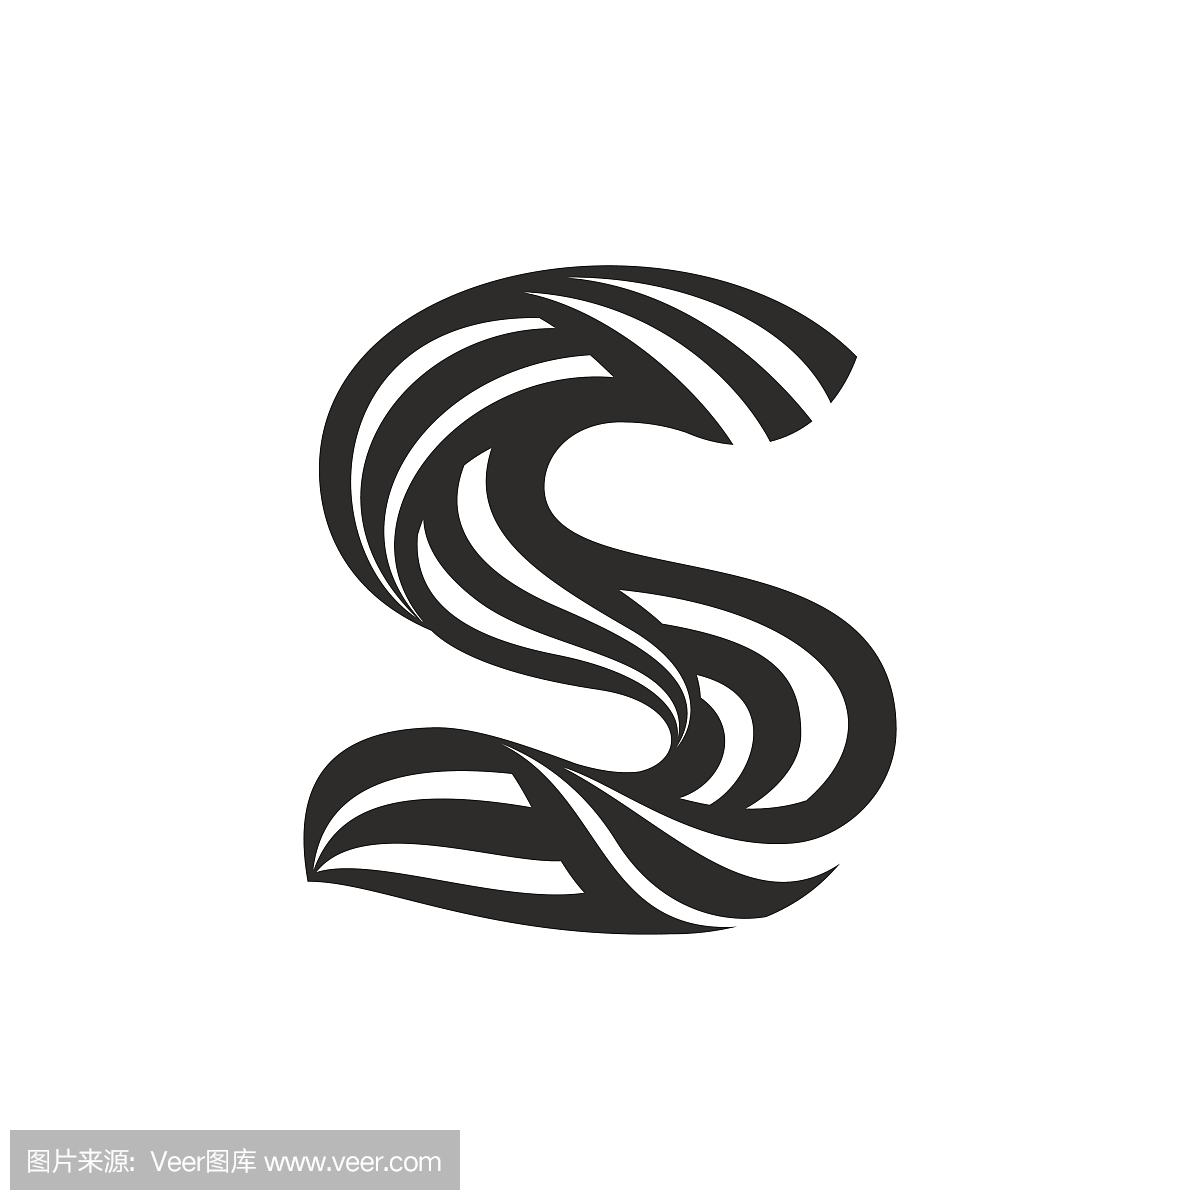 由扭曲线形成的S字母图标。